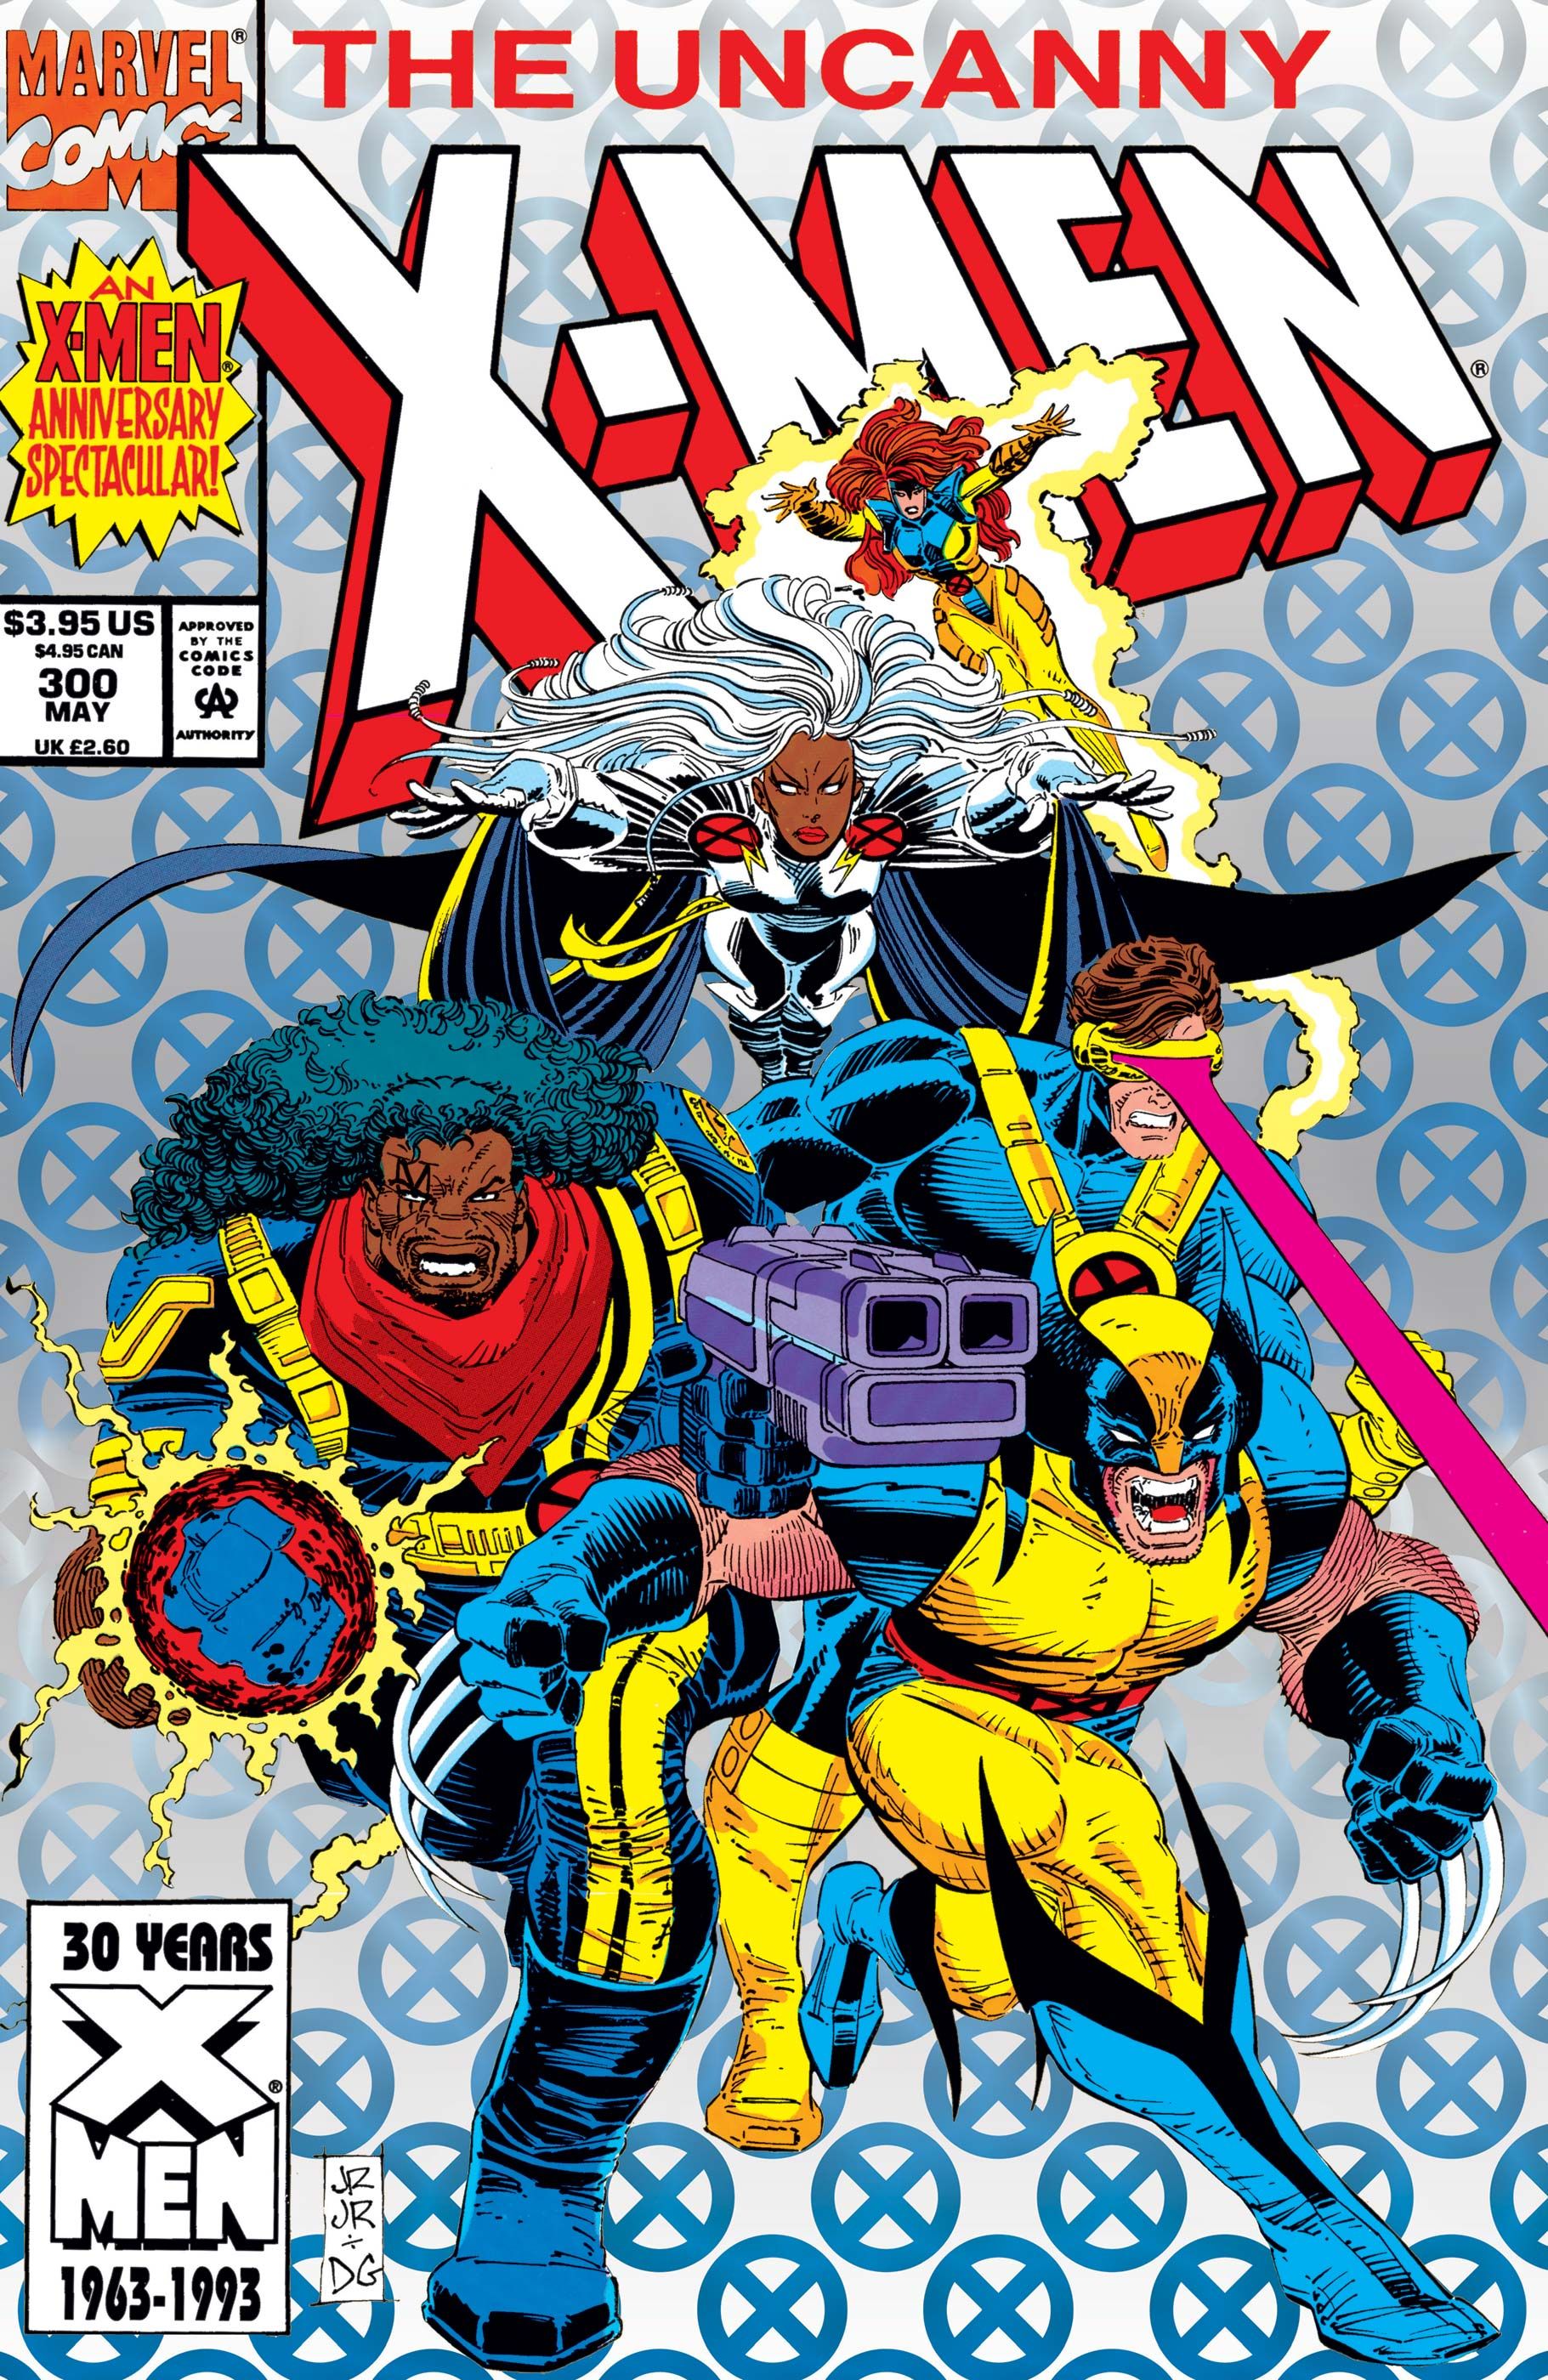 John Romita Jr. and Dan Green drew Uncanny X-Men #300's foil cover